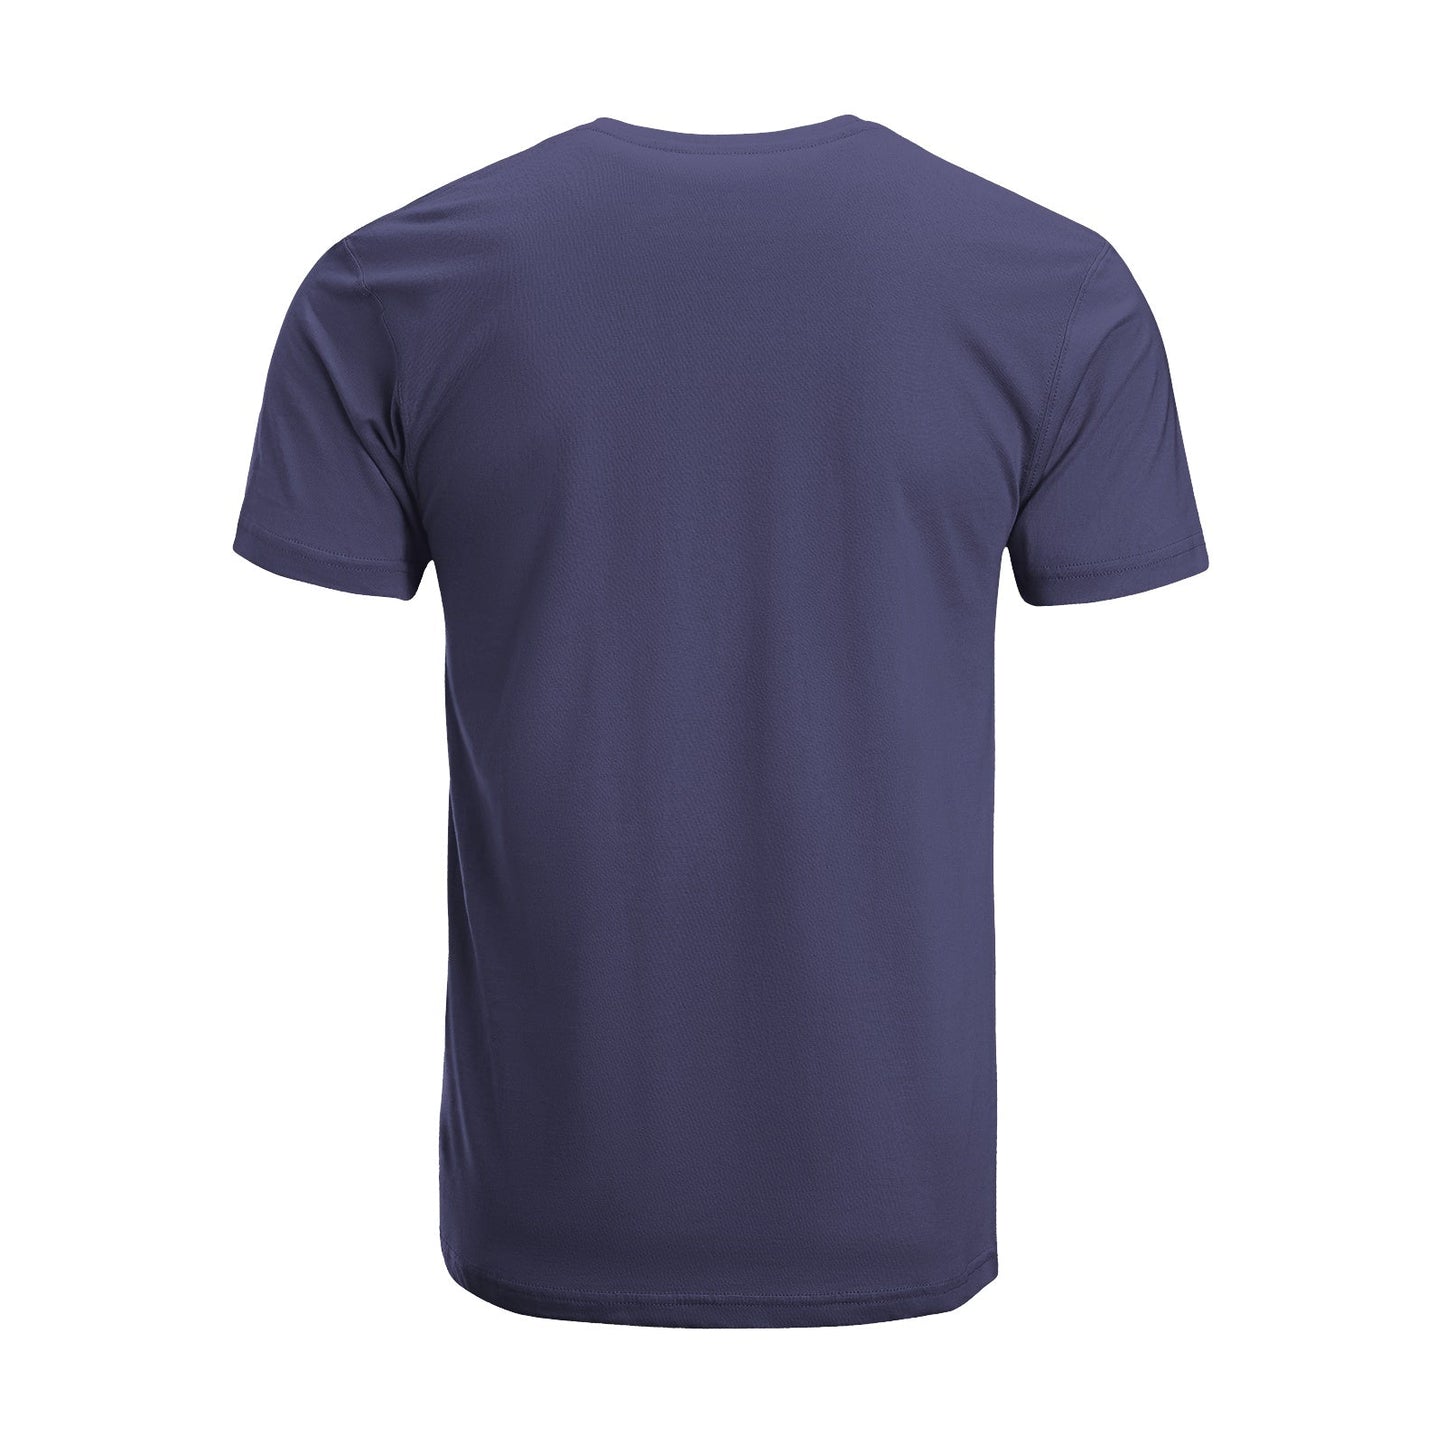 Unisex Short Sleeve Crew Neck Cotton Jersey T-Shirt TRUCK 16